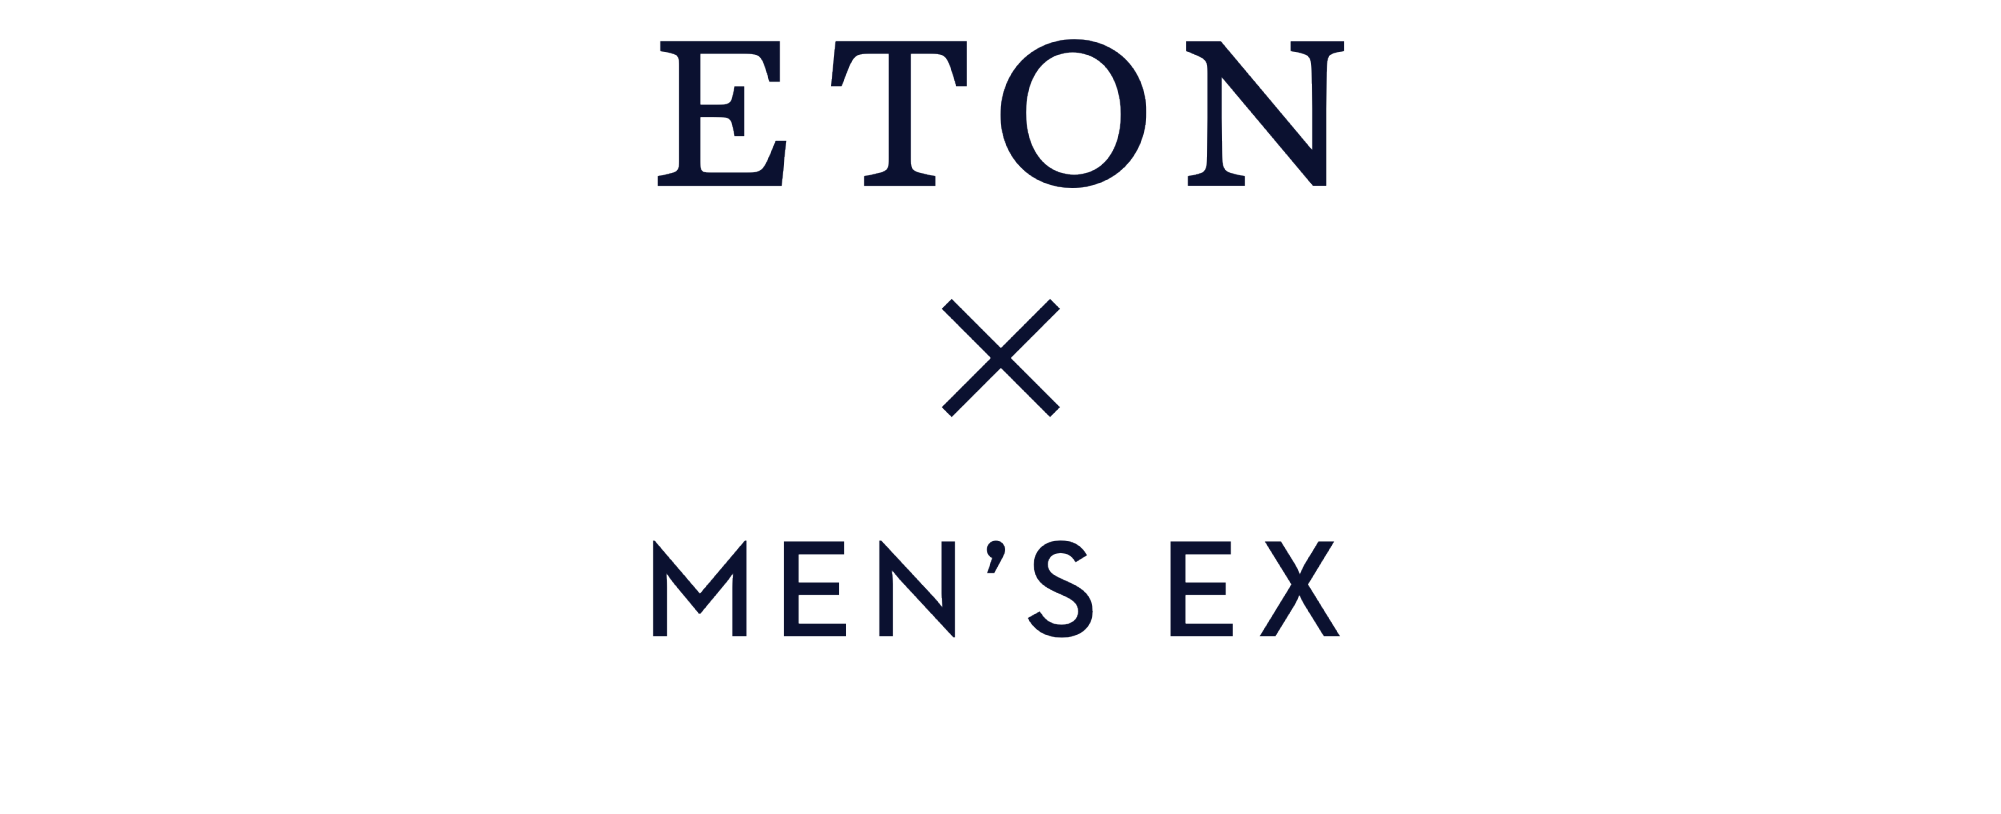 eton mensex（smaller)2